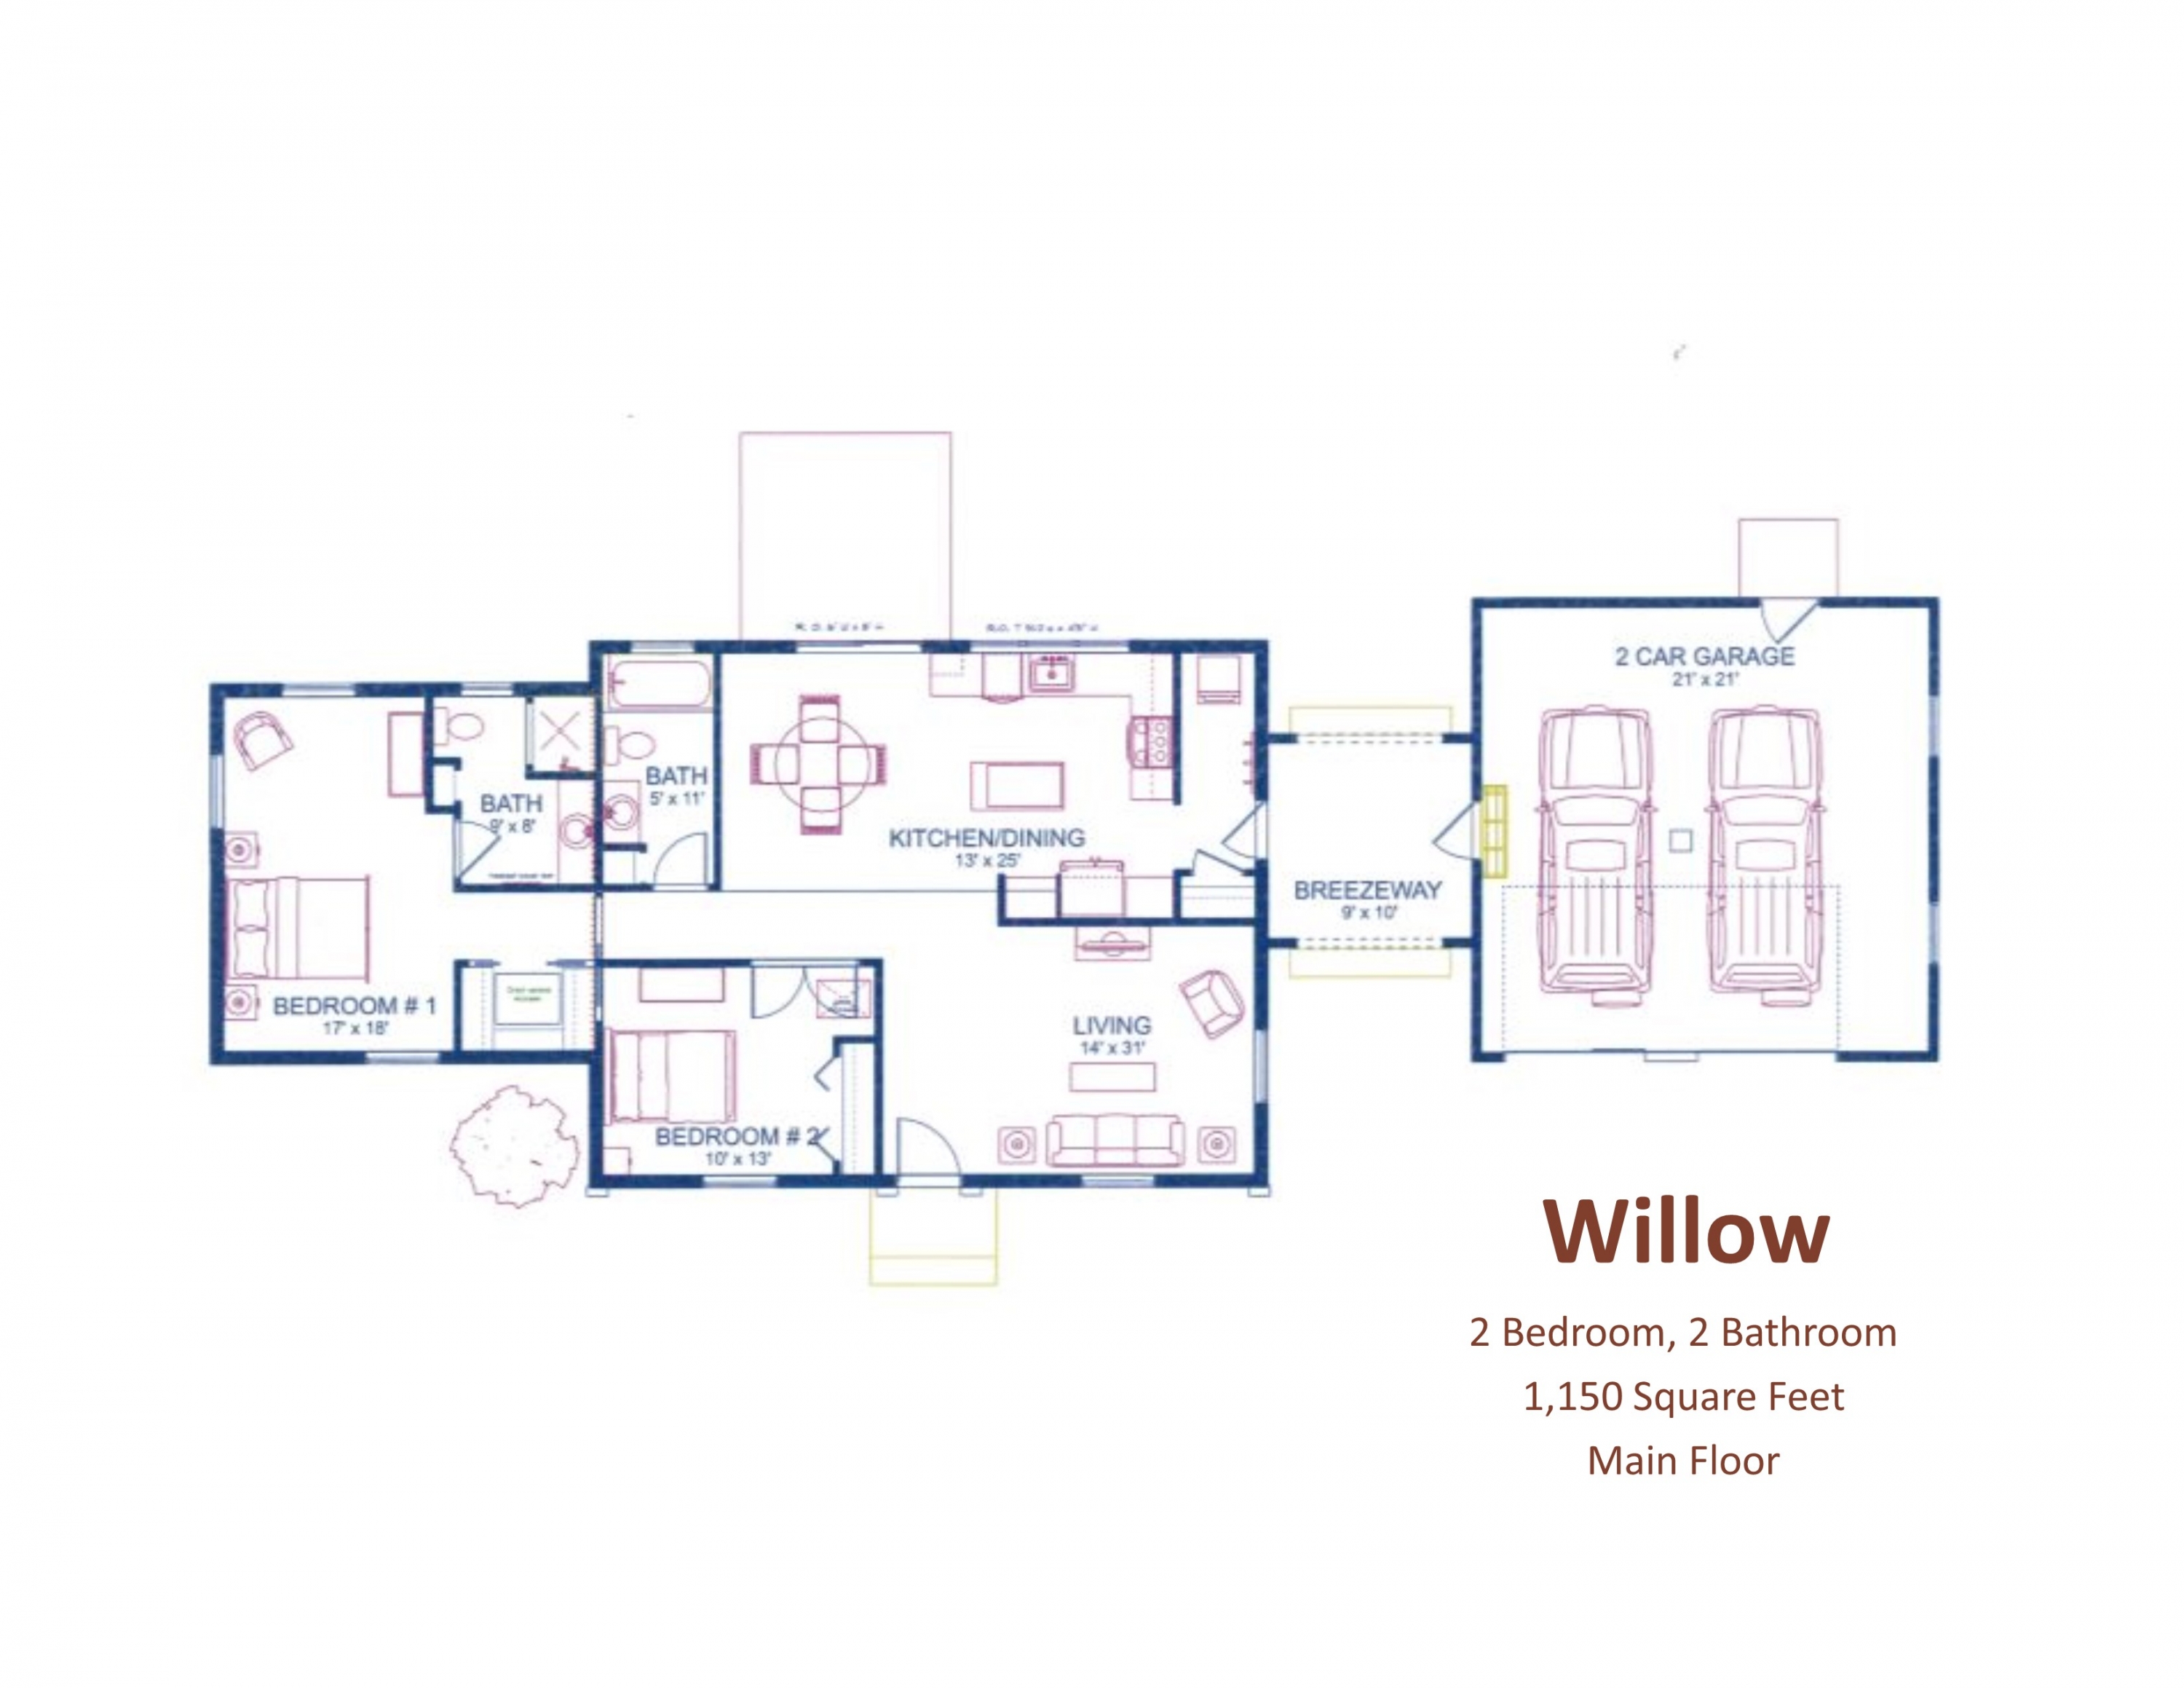 Willow Main Floor